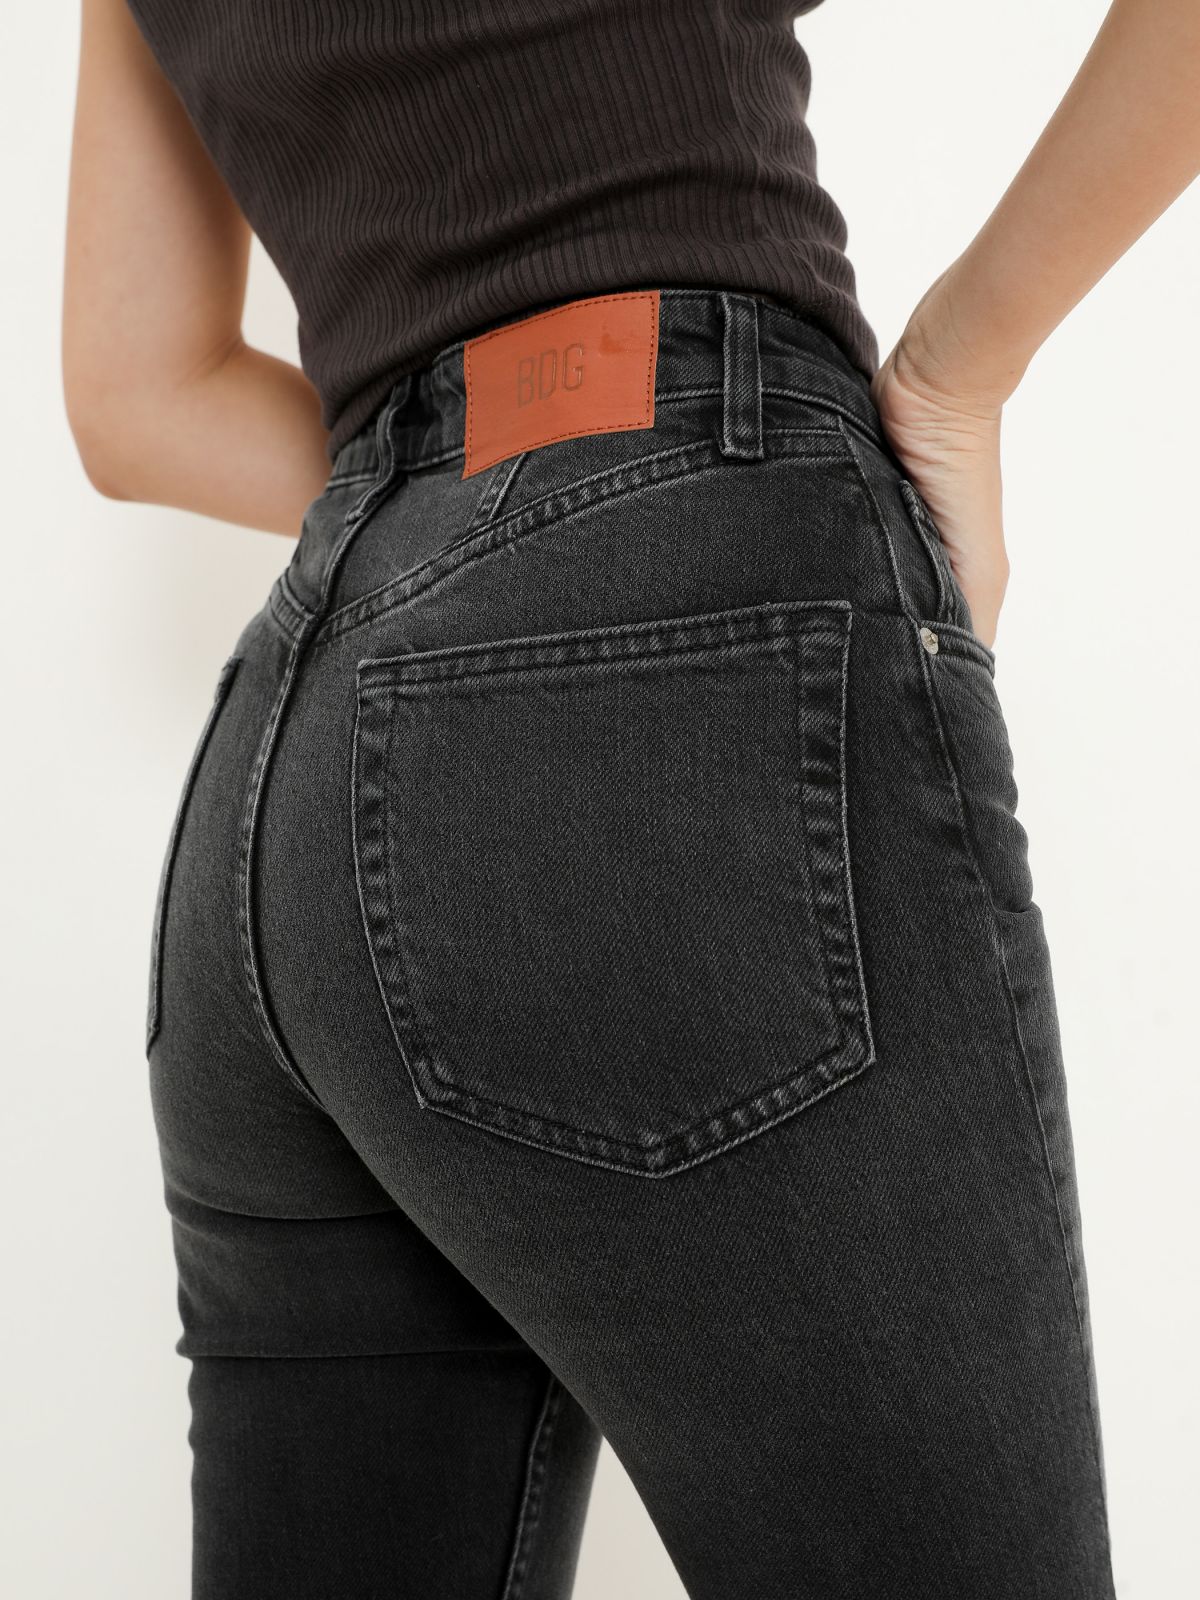  ג'ינס סקיני בסיומת גזורה של URBAN OUTFITTERS